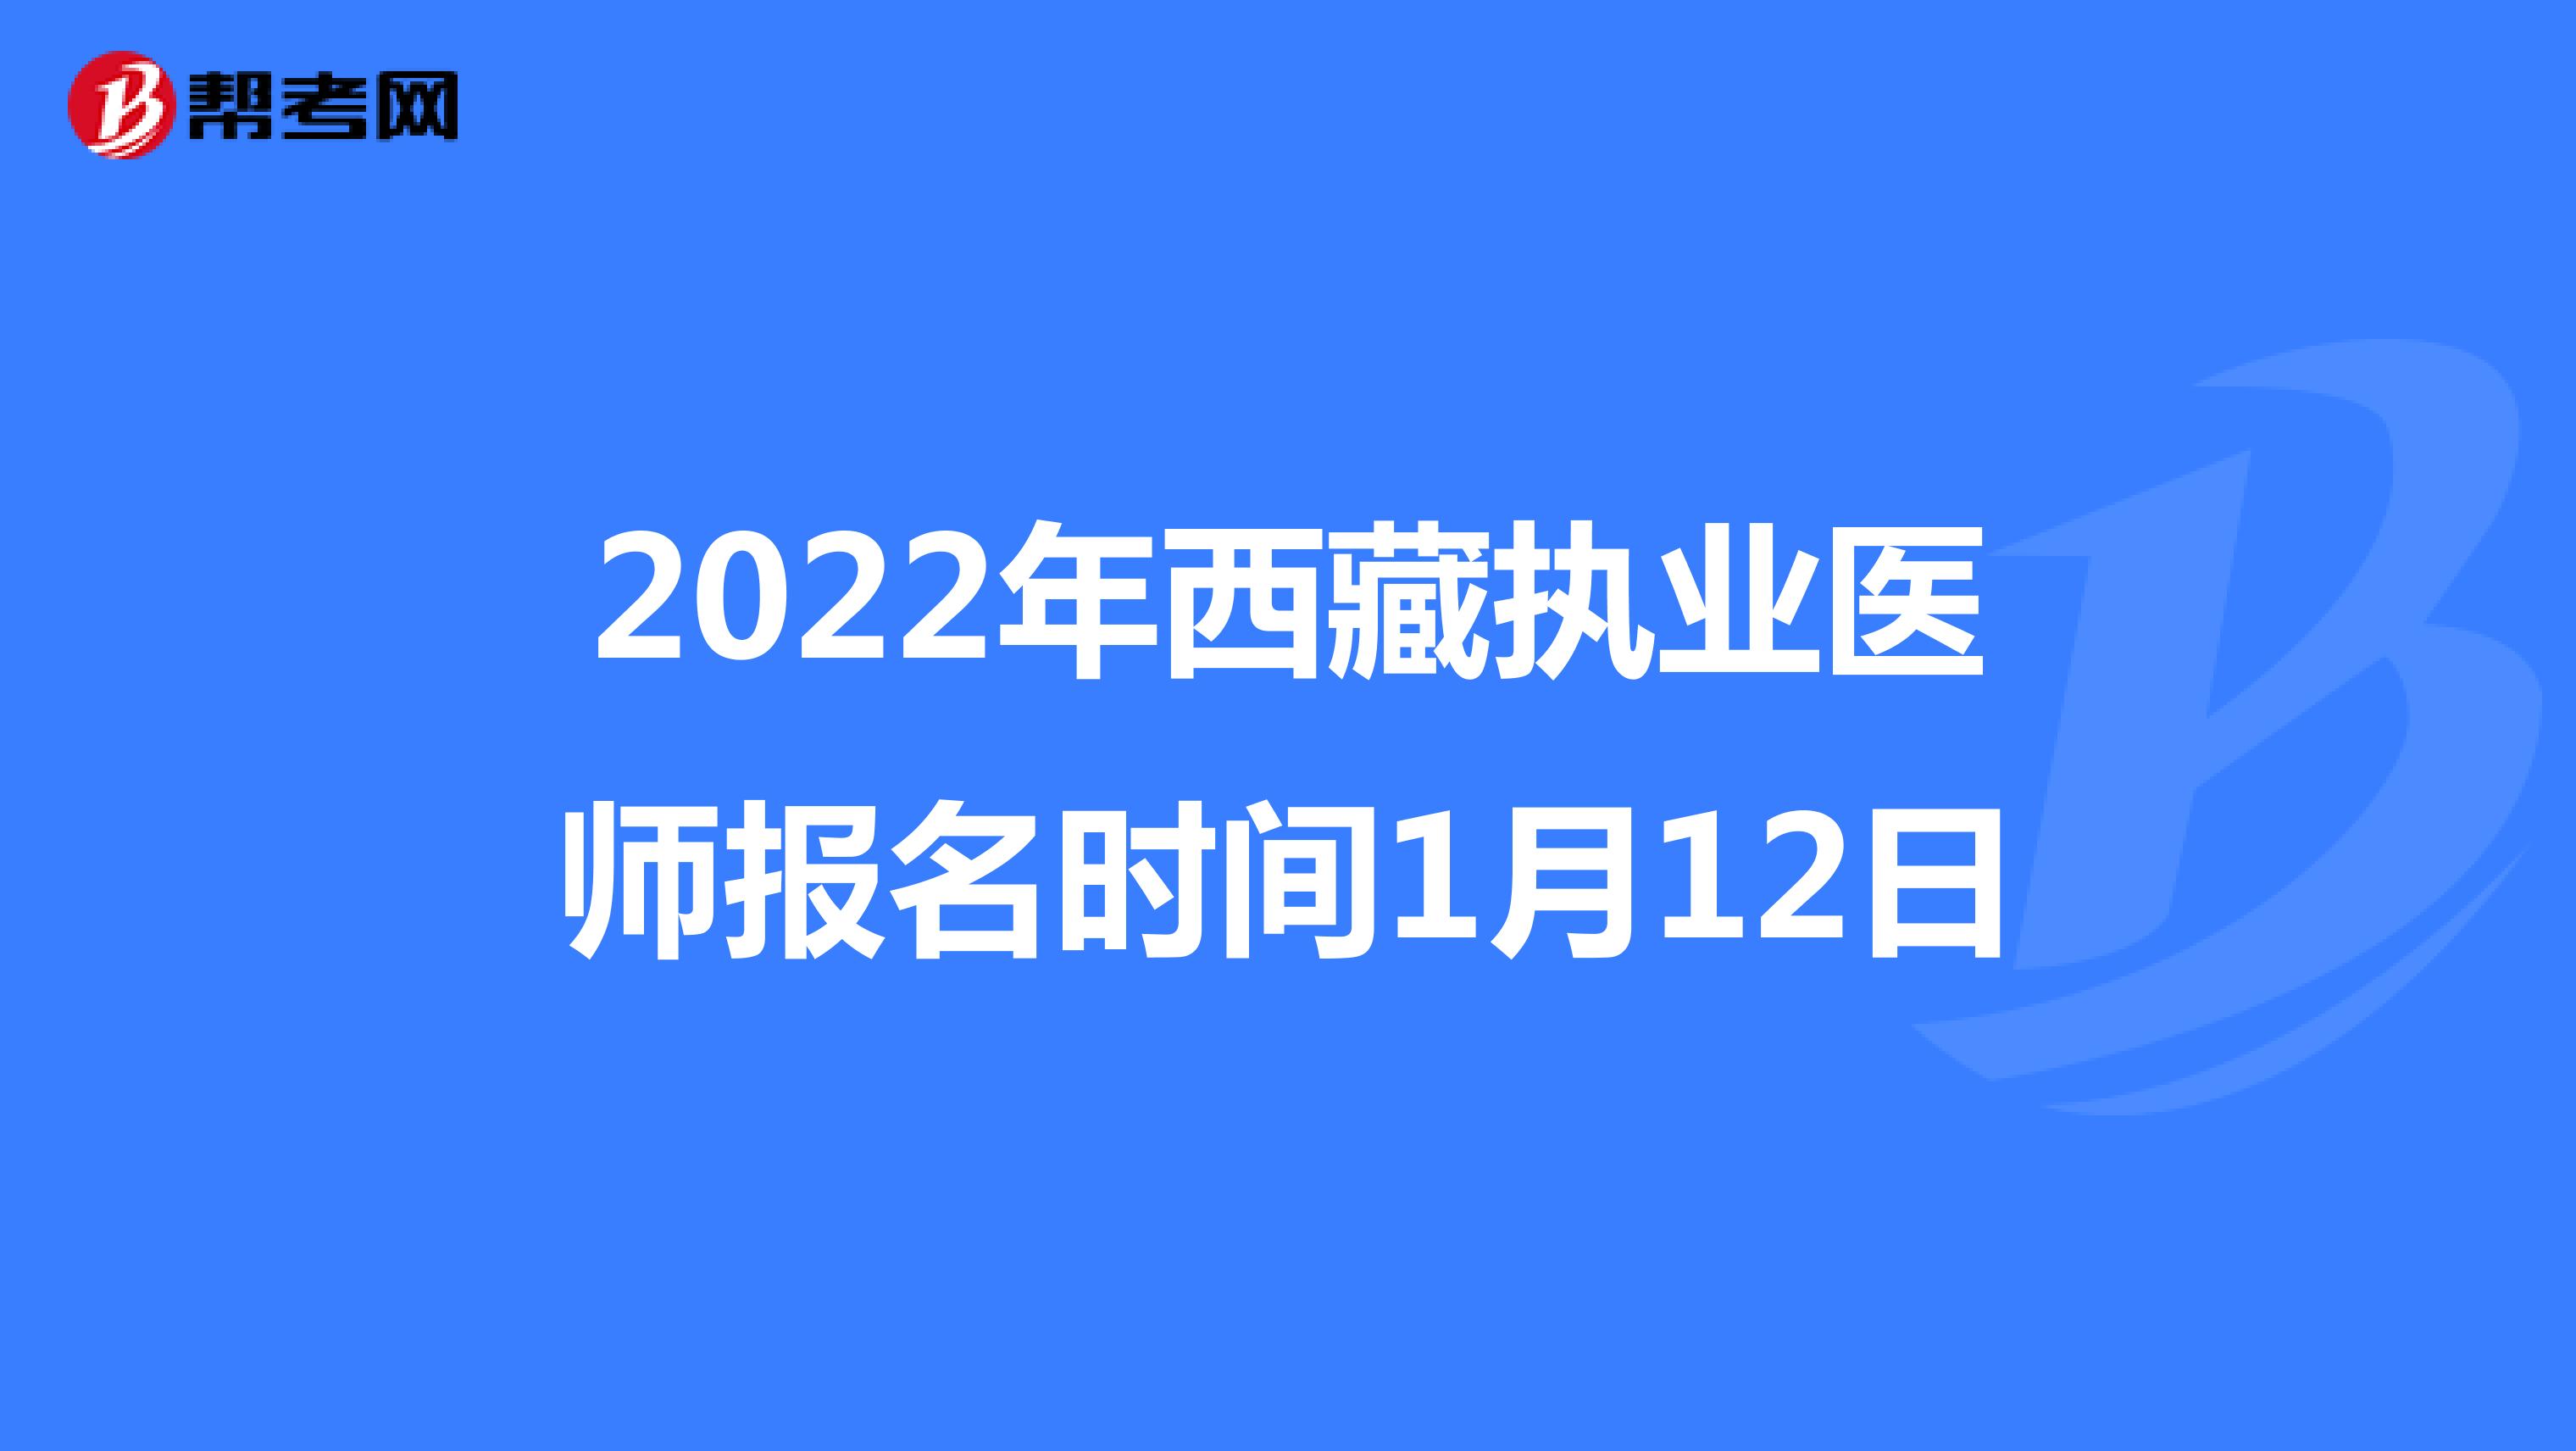 2022年西藏执业医师报名时间1月12日